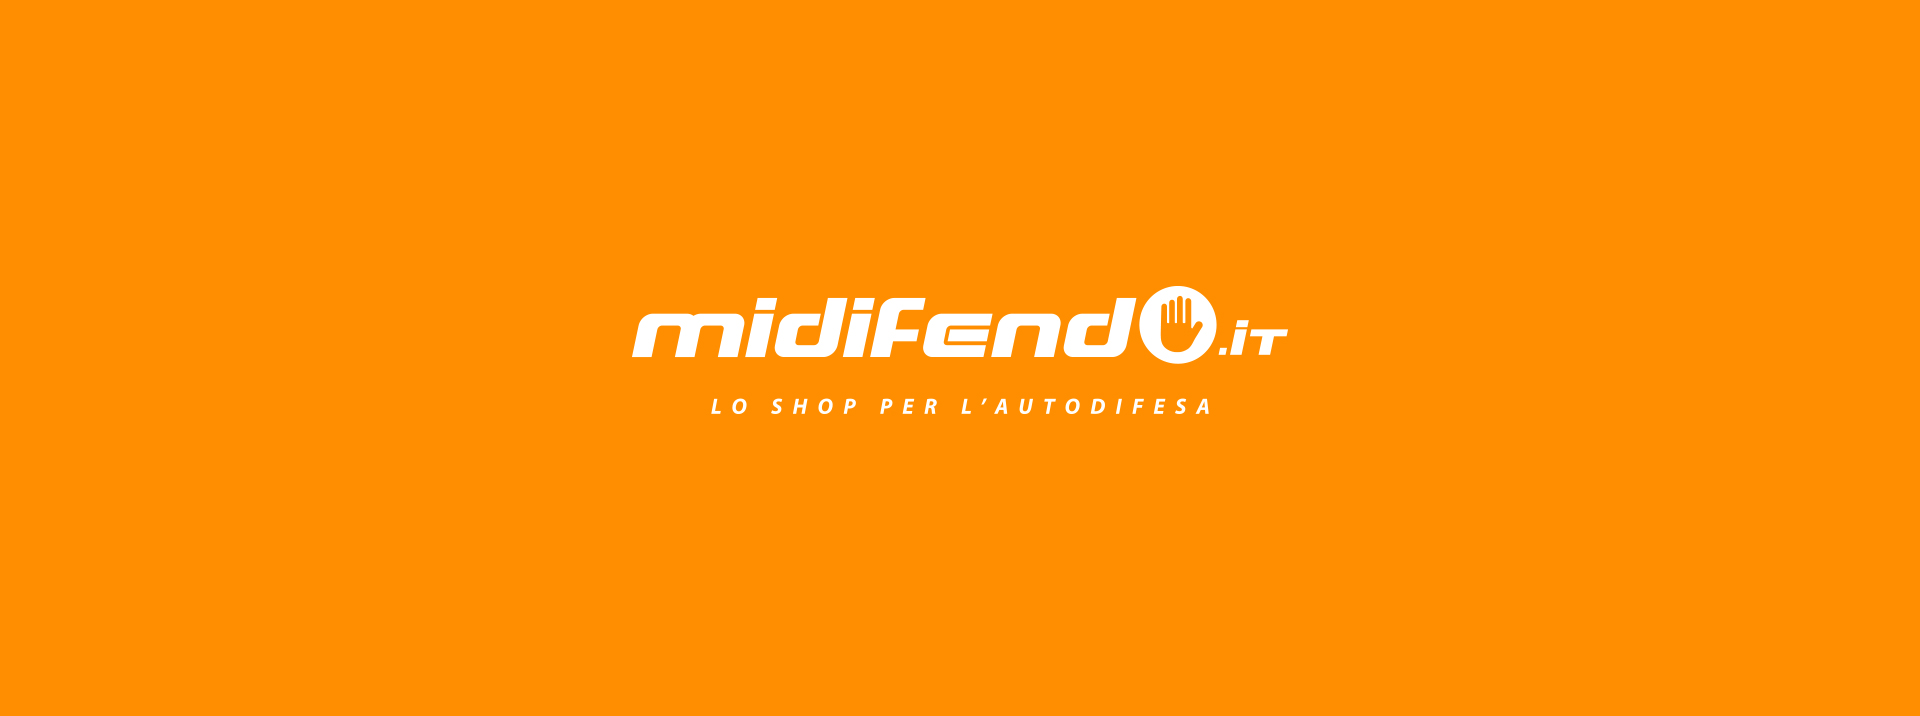 MiDifendo.it, Lo shop per l'autodifesa